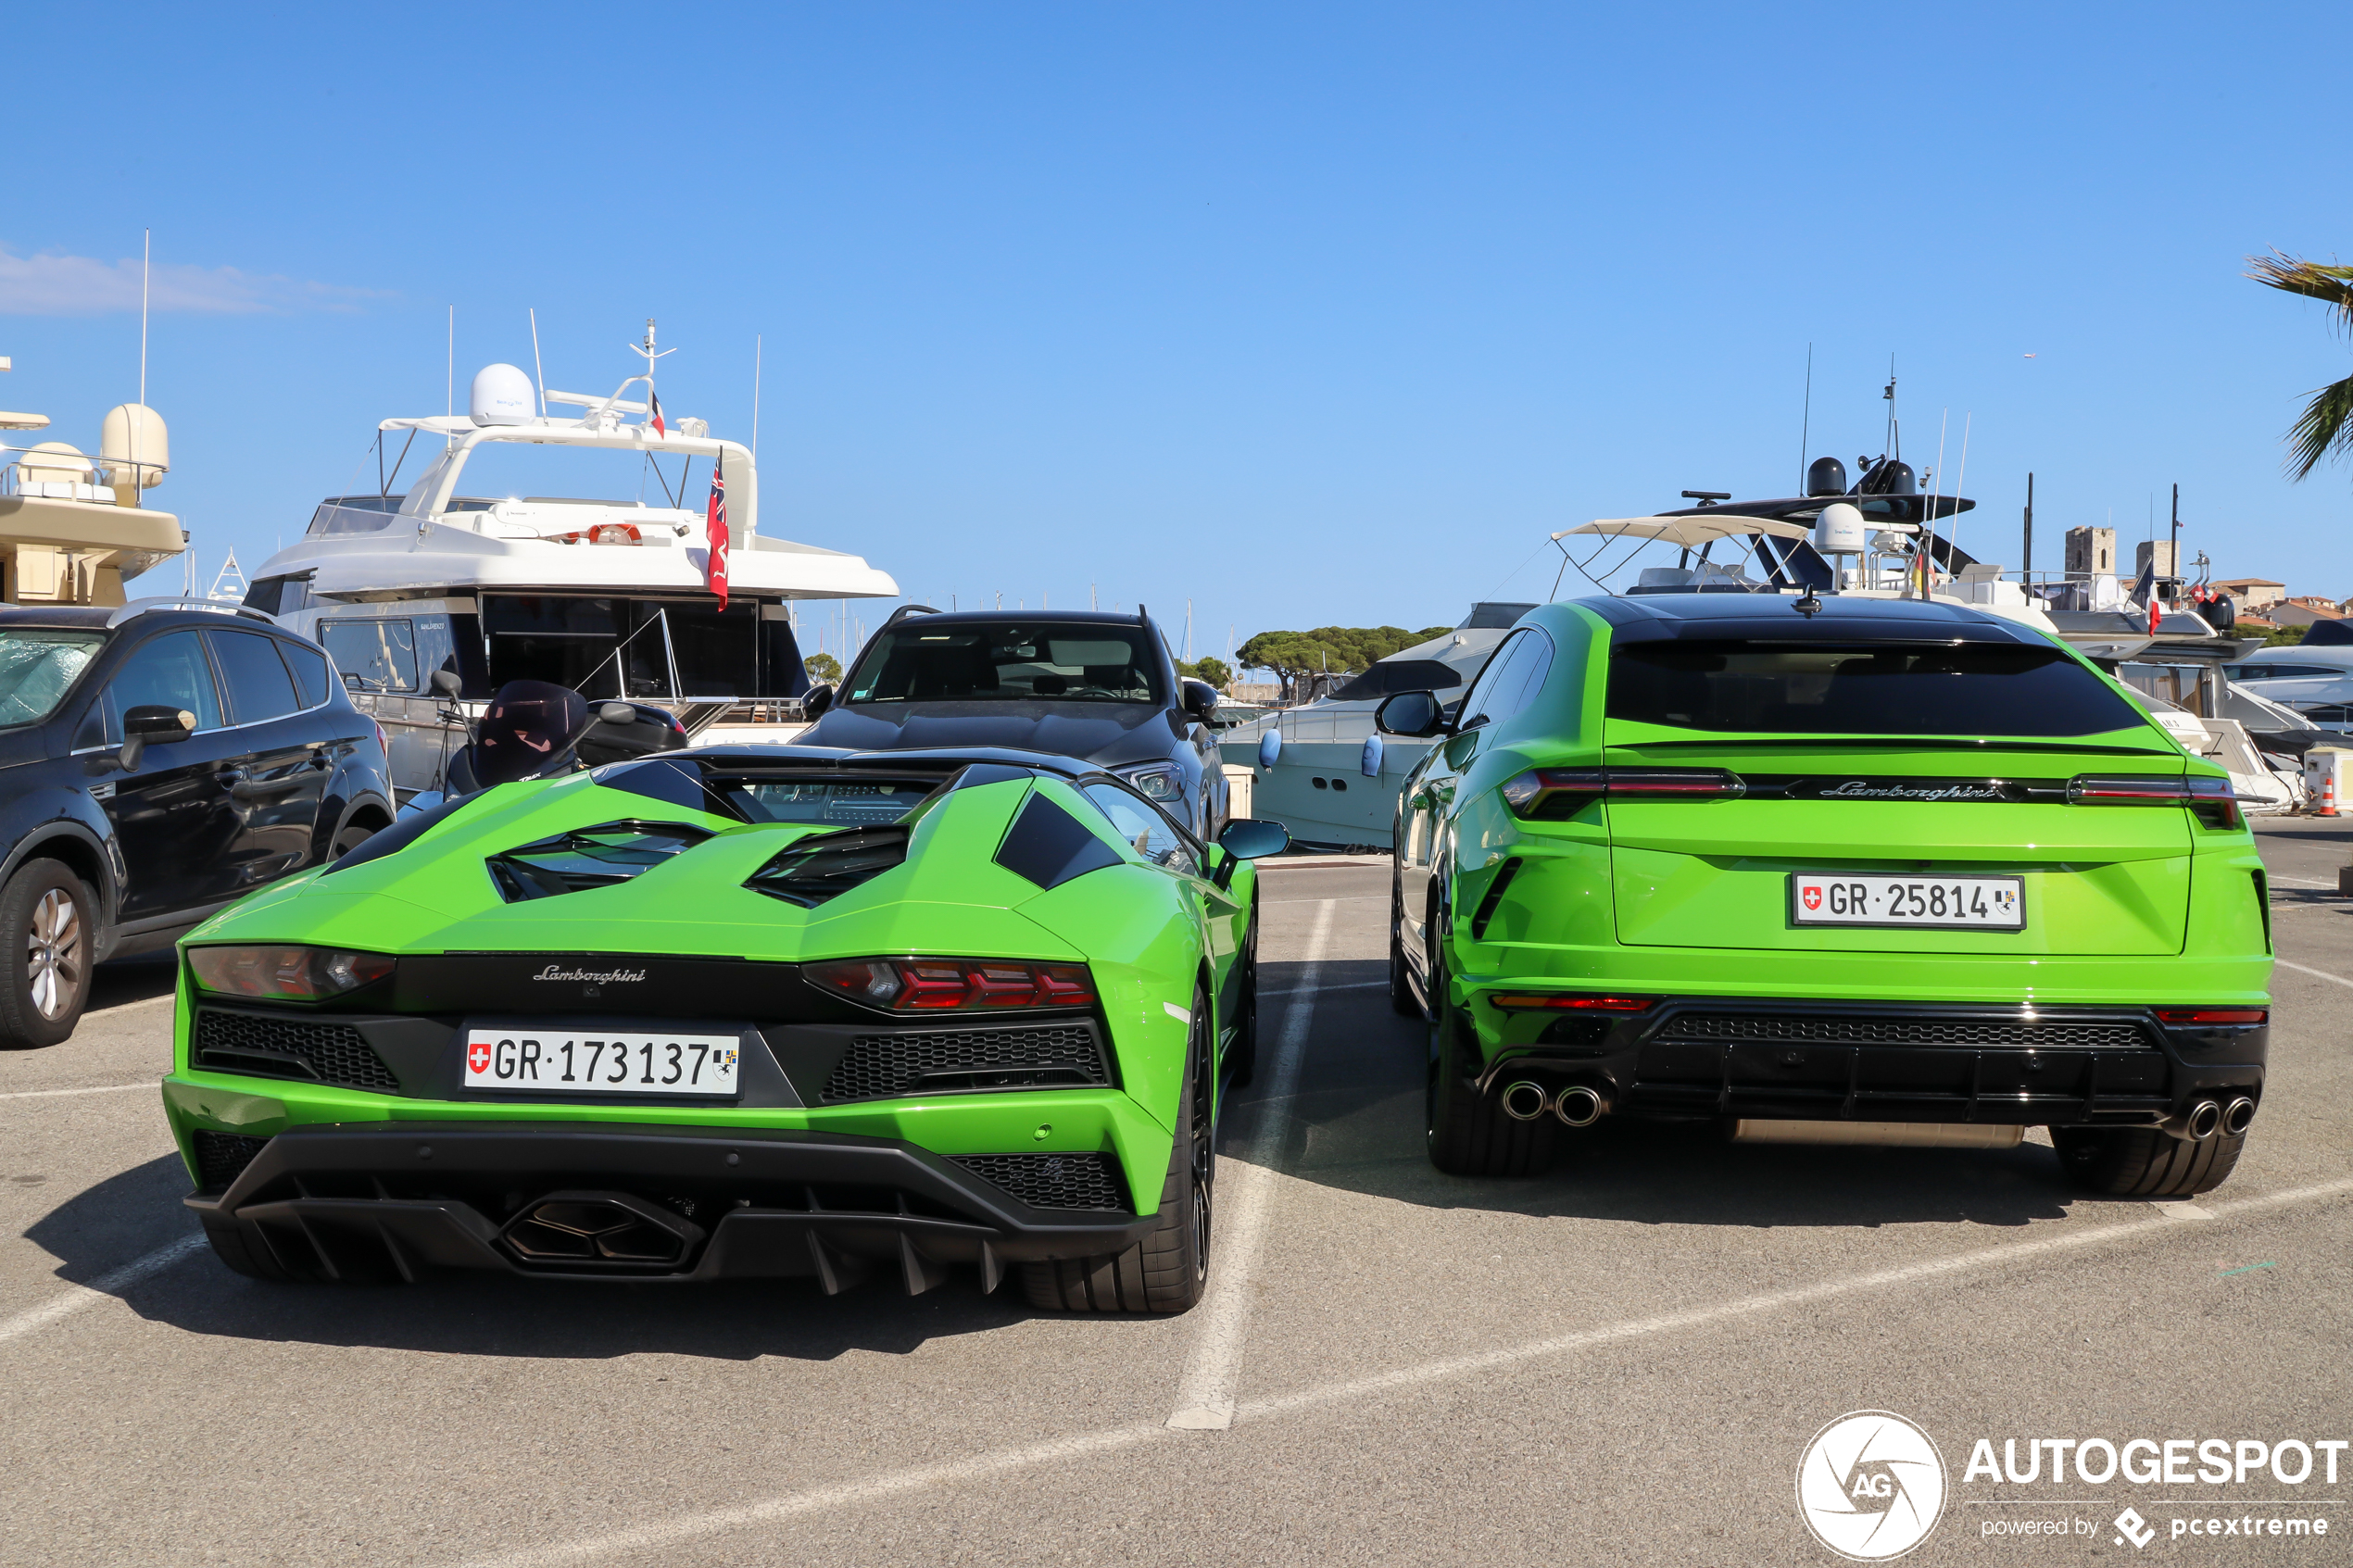 Location Lamborghini (Urus, Huracan…) à Paris, Cannes, Monaco et Nice